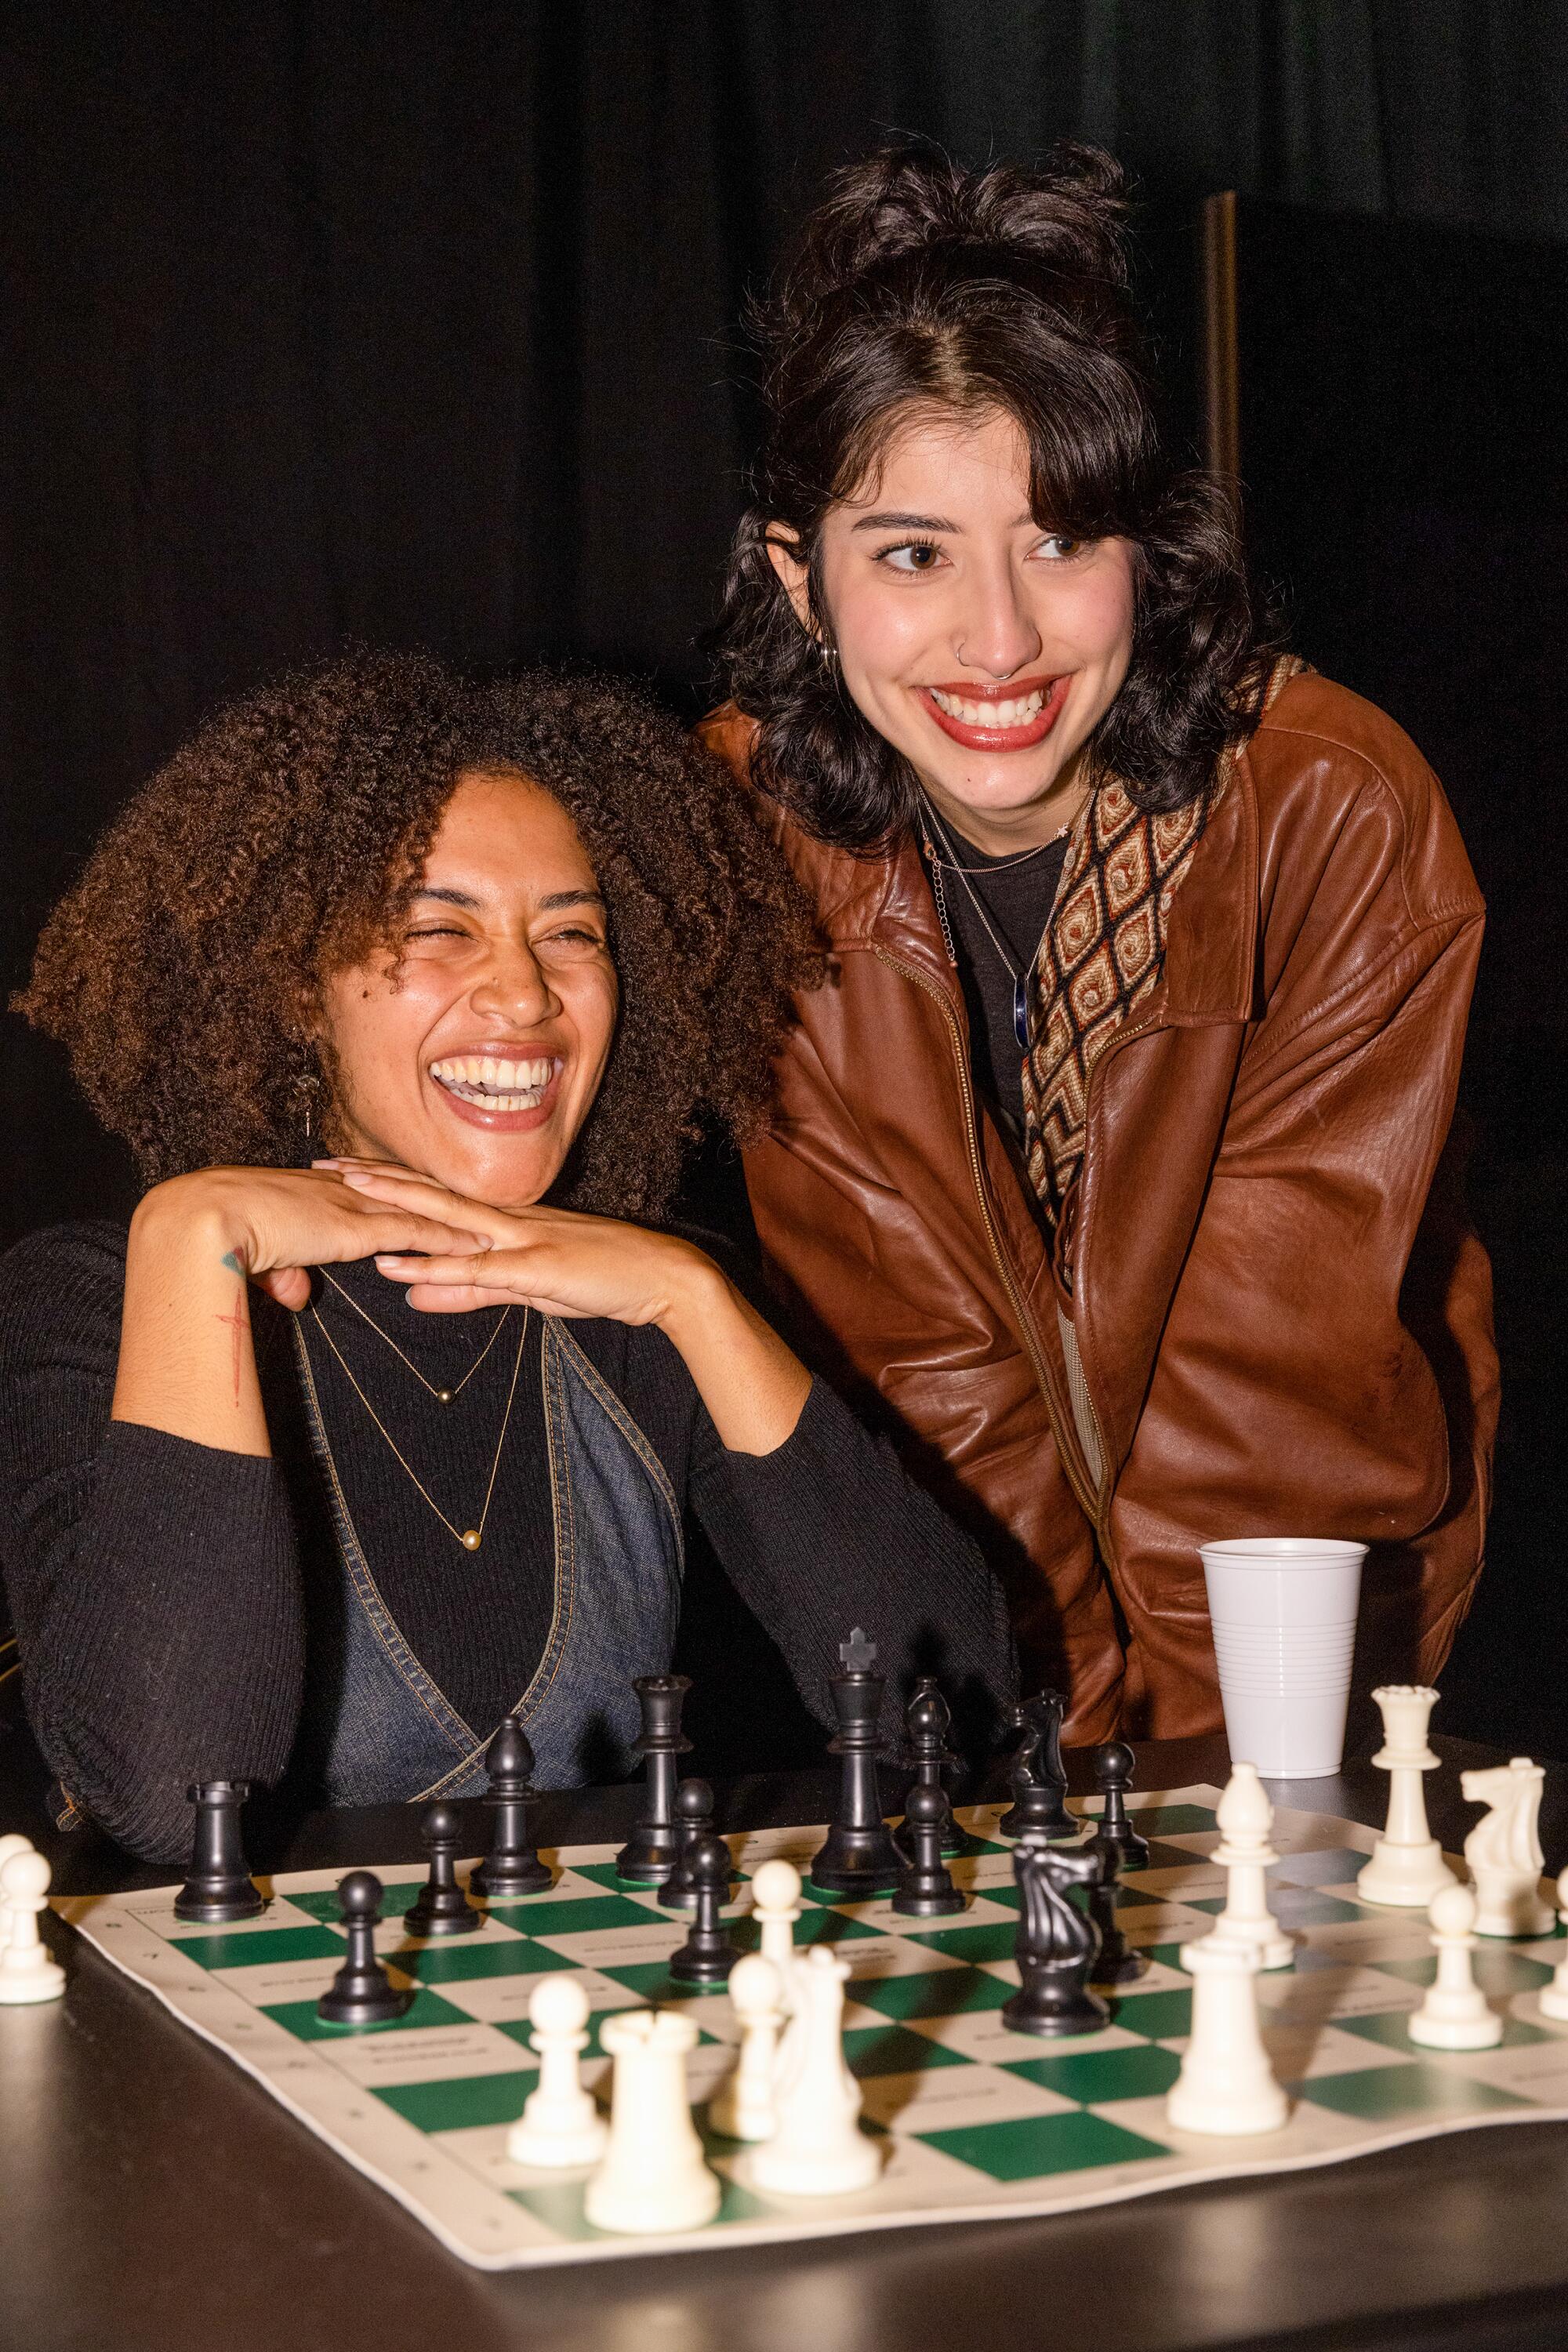 Zwei Personen spielen zusammen mit neuen Freunden eine Partie Schach.